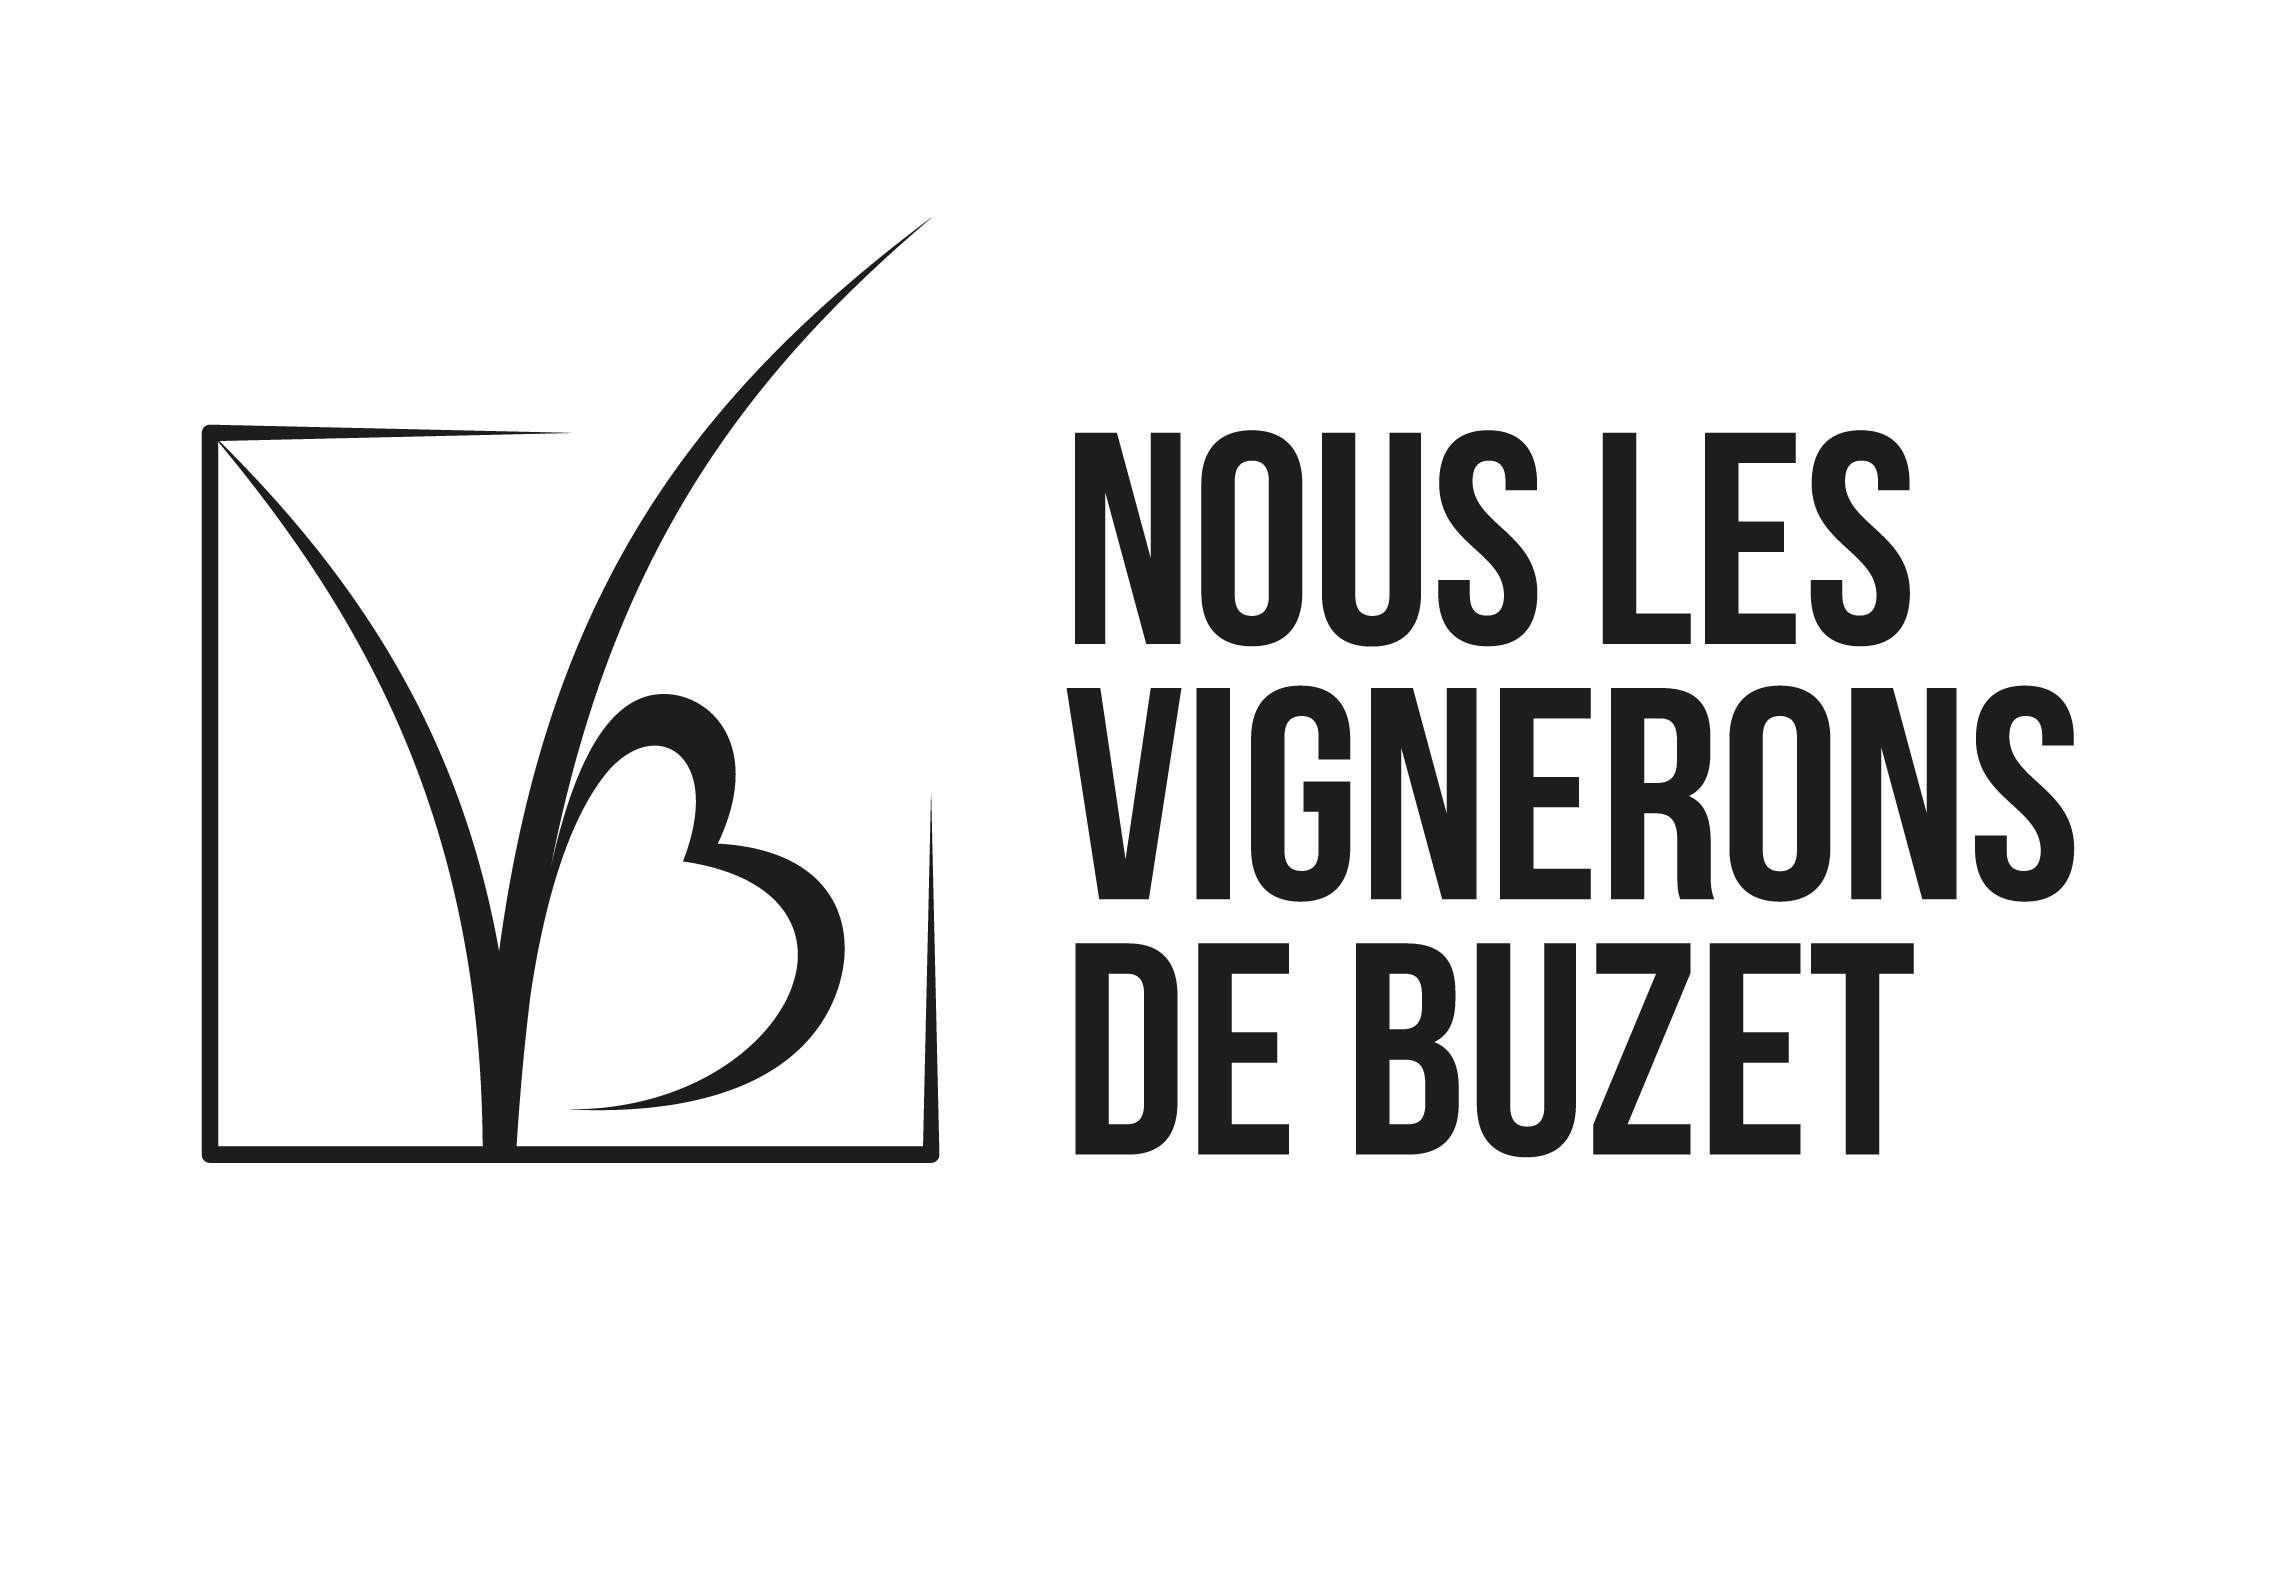 Les vignerons de Buzet